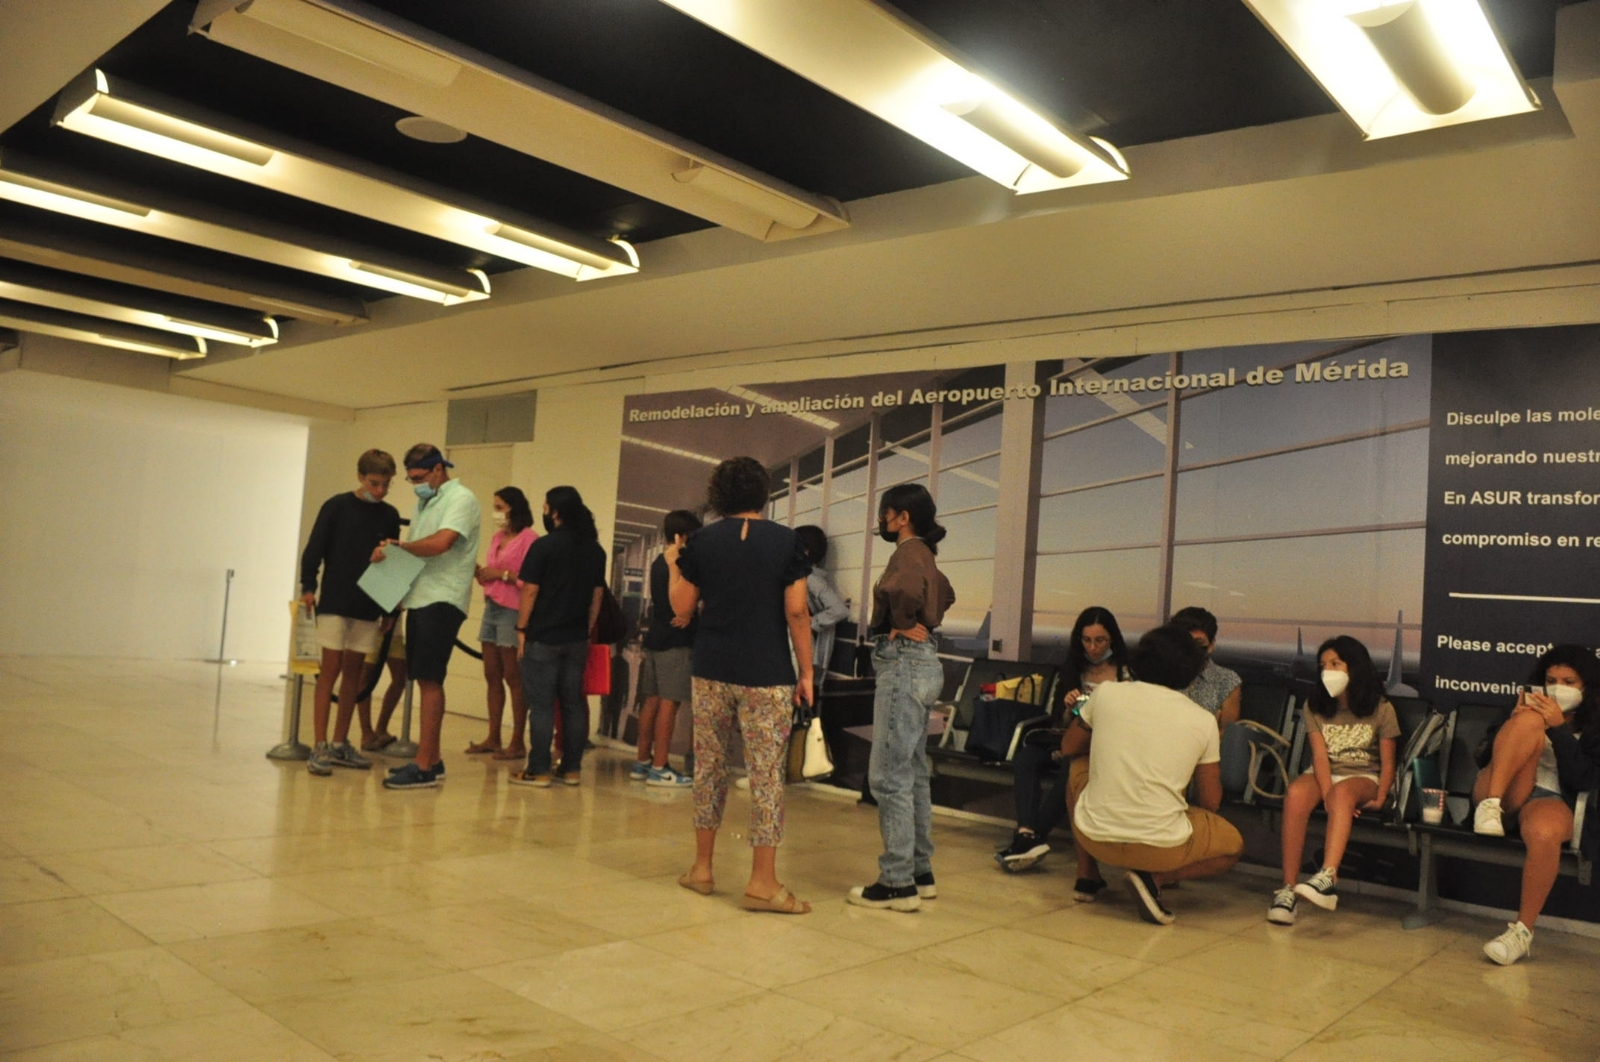 La mayoría de los extranjeros han sido asegurados en el aeropuerto de Mérida “Manuel Crescencio Rejón”, en revisiones de rutina